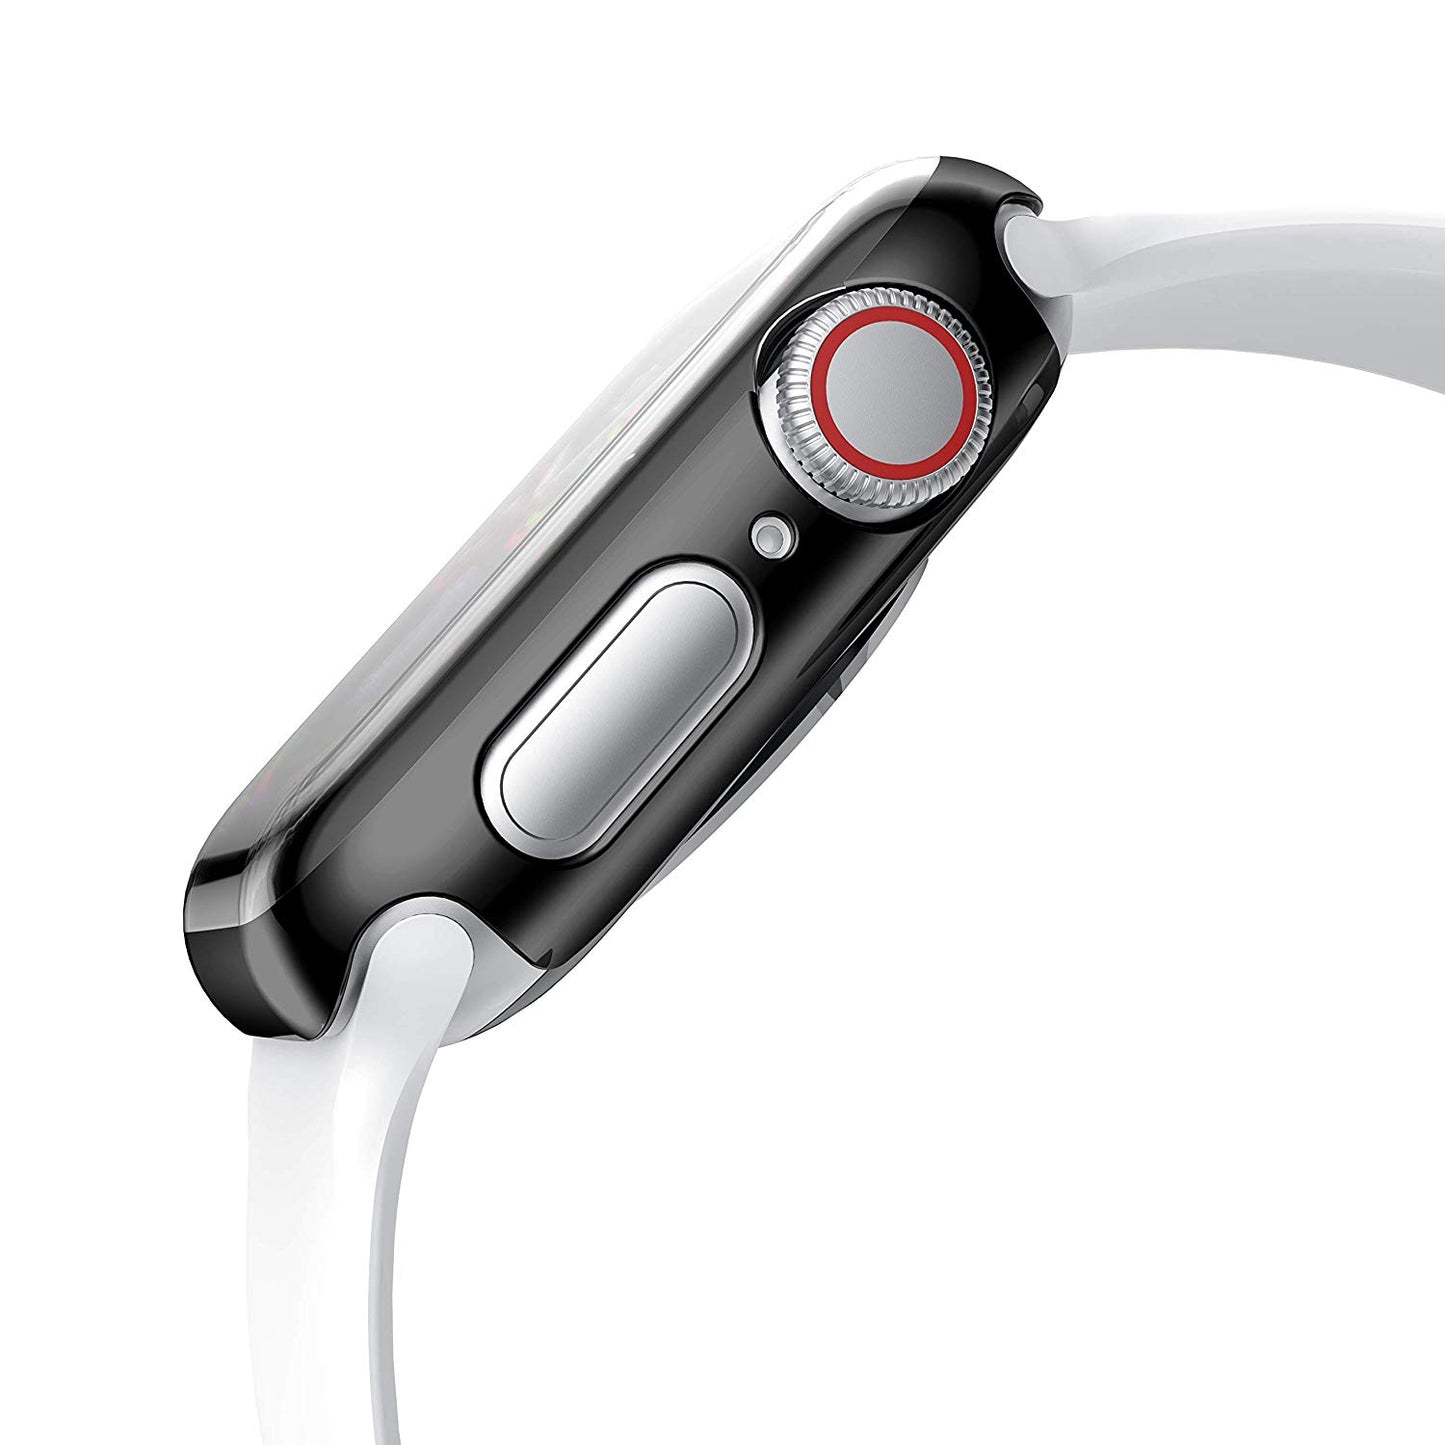 ArktisPRO Apple Watch 40 mm Fashion Case